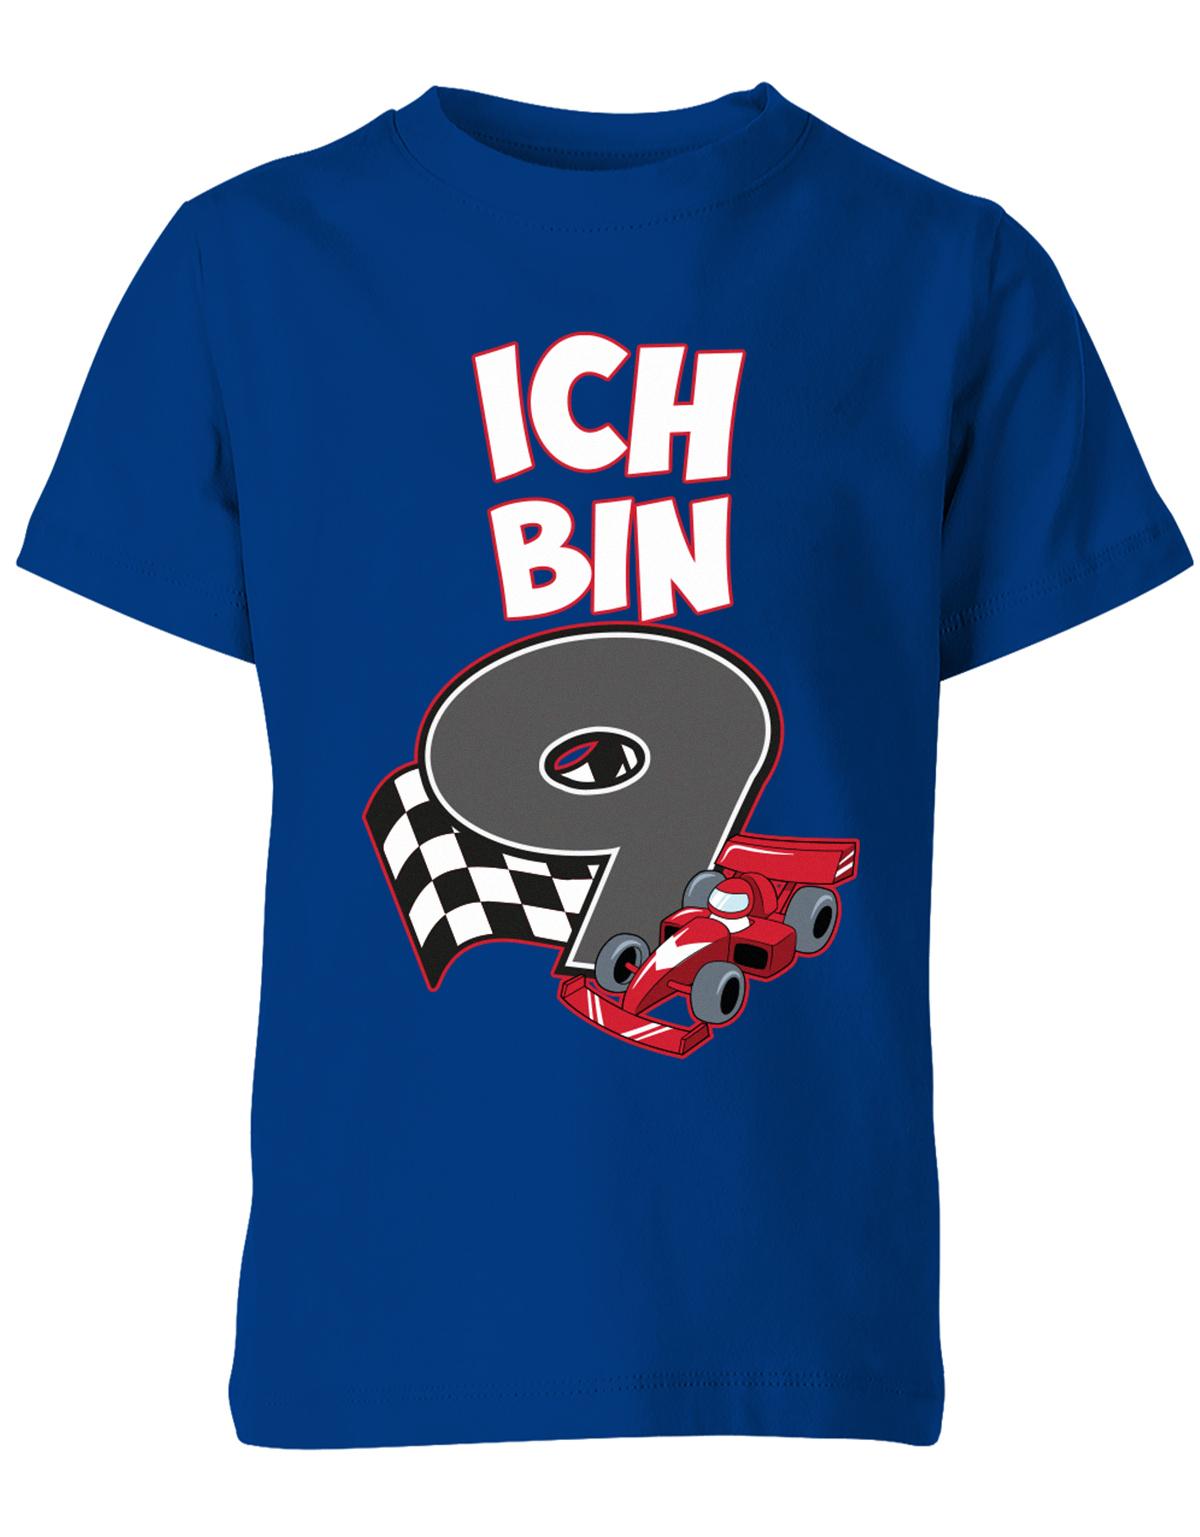 ich-bin-9-autorennen-rennwagen-geburtstag-rennfahrer-kinder-shirt-royalblau